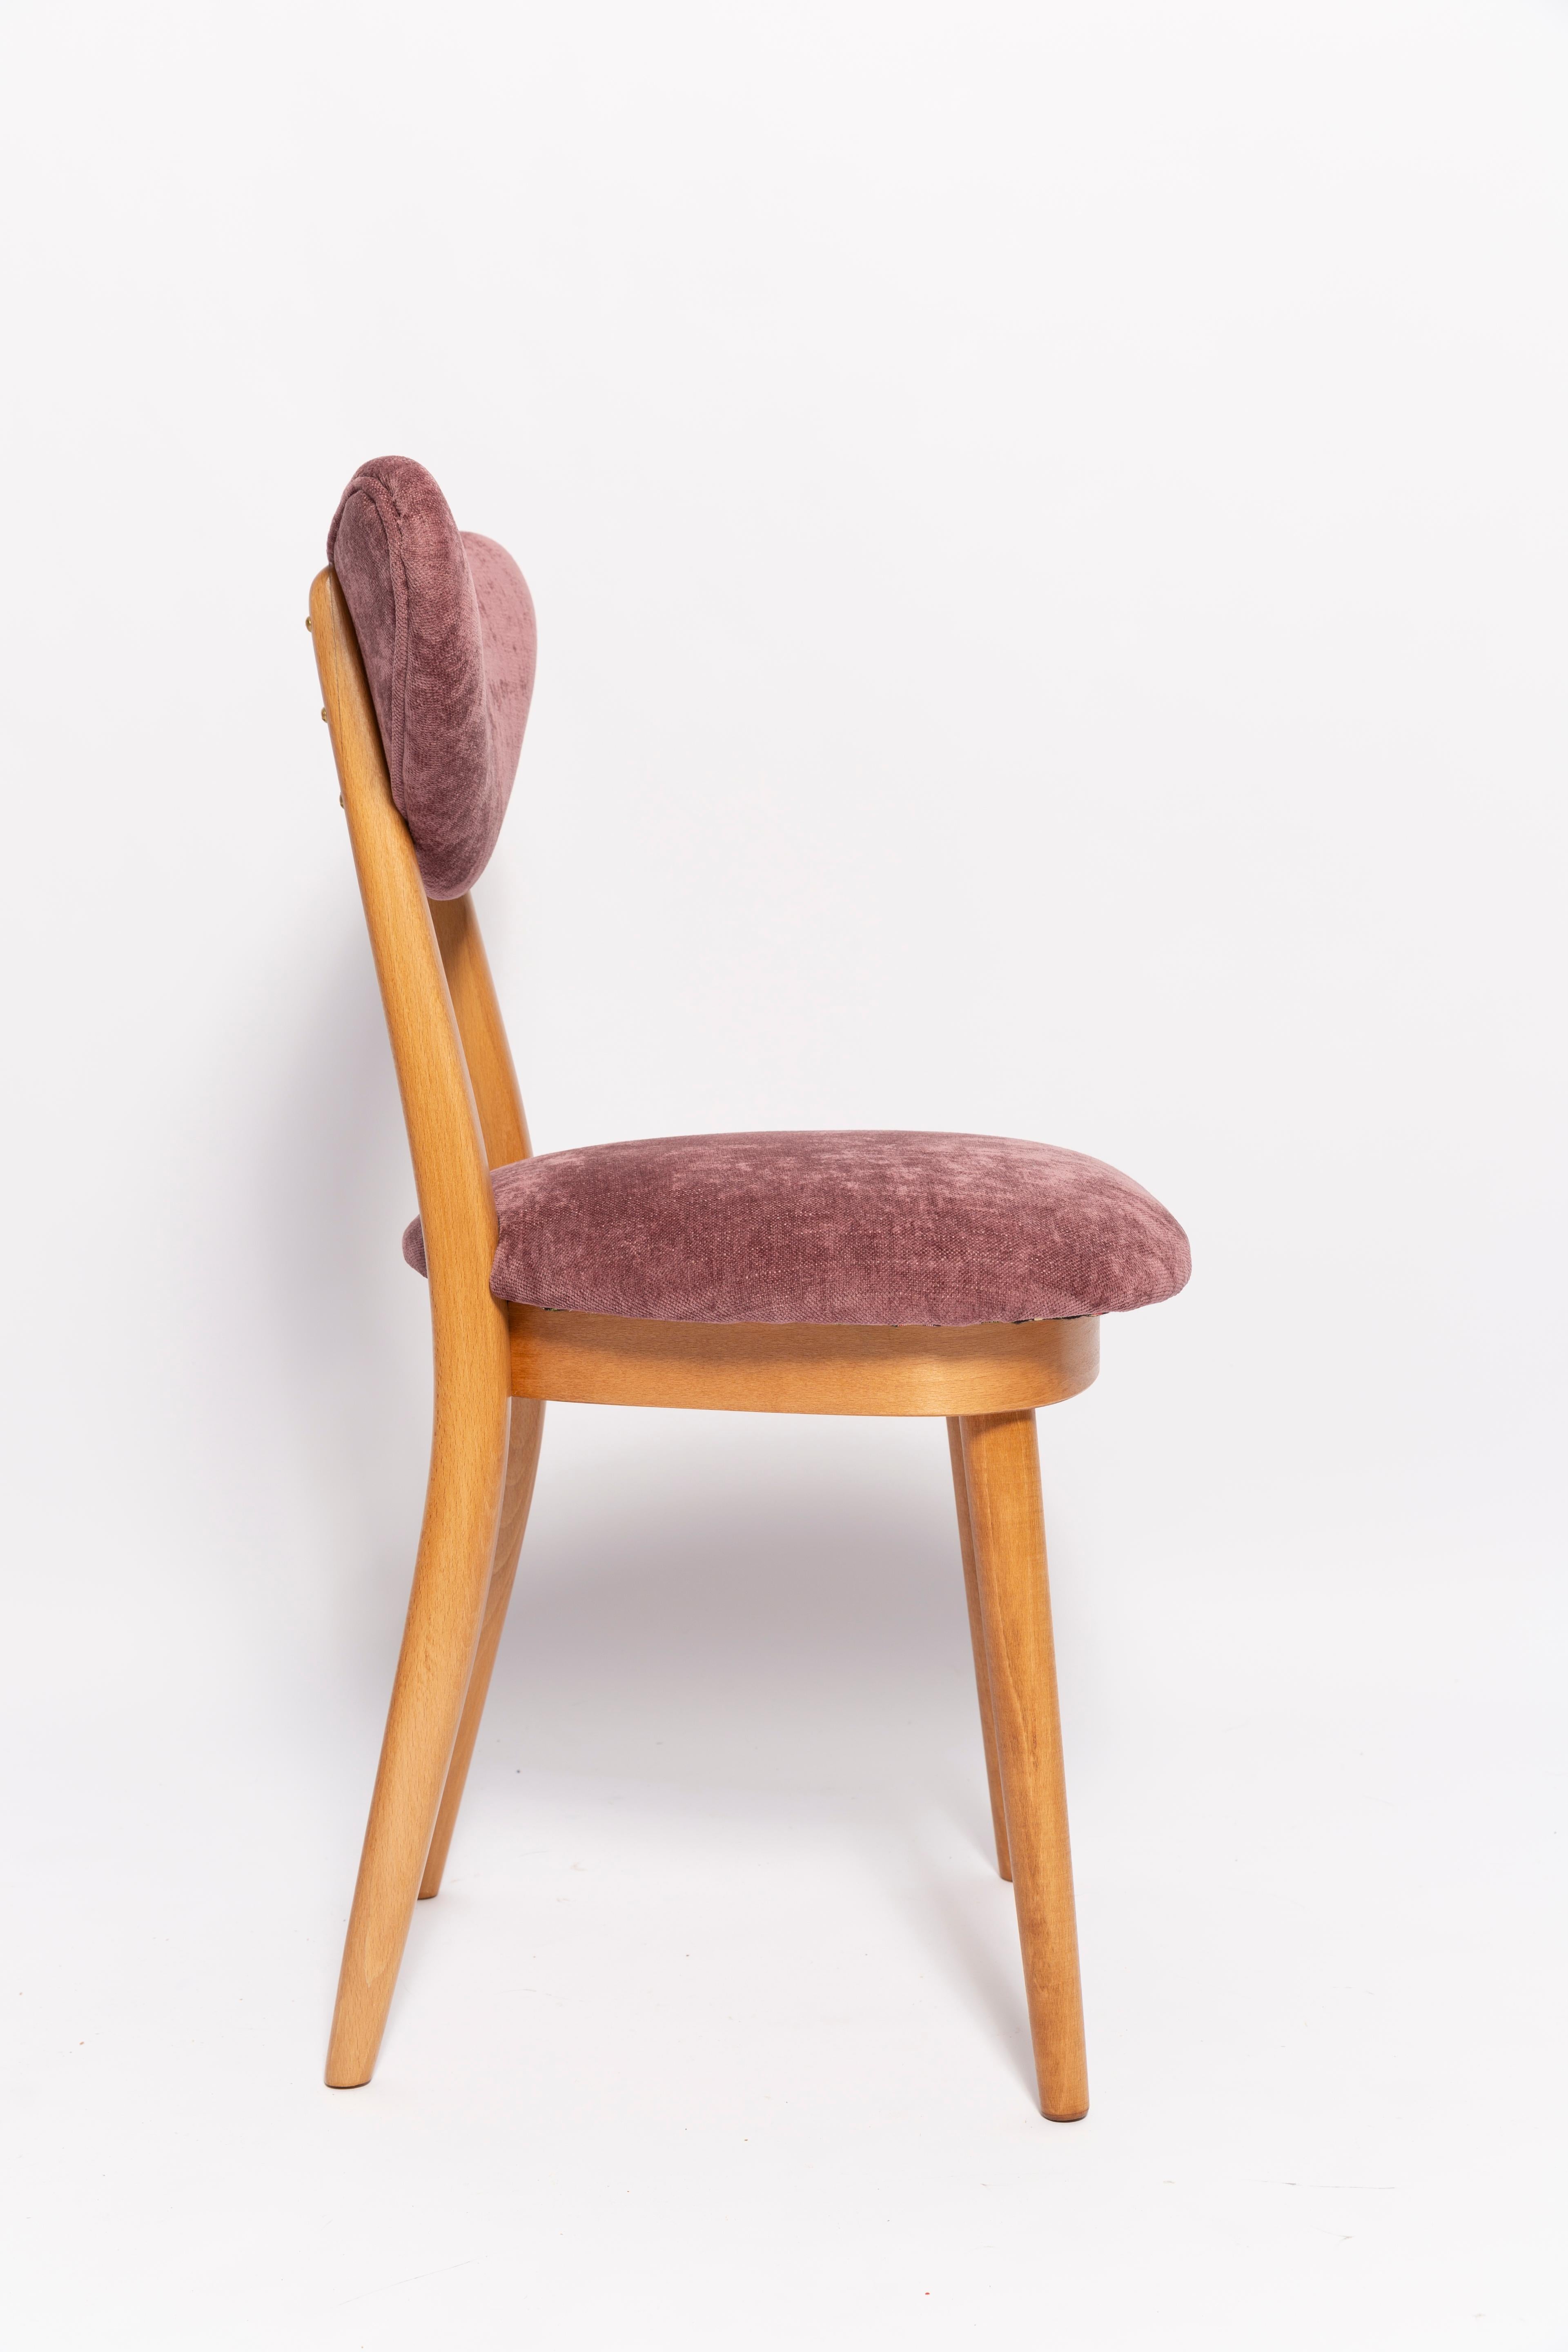 Midcentury Plum Violet Velvet, Light Wood Heart Chair, Europe, 1960s For Sale 1